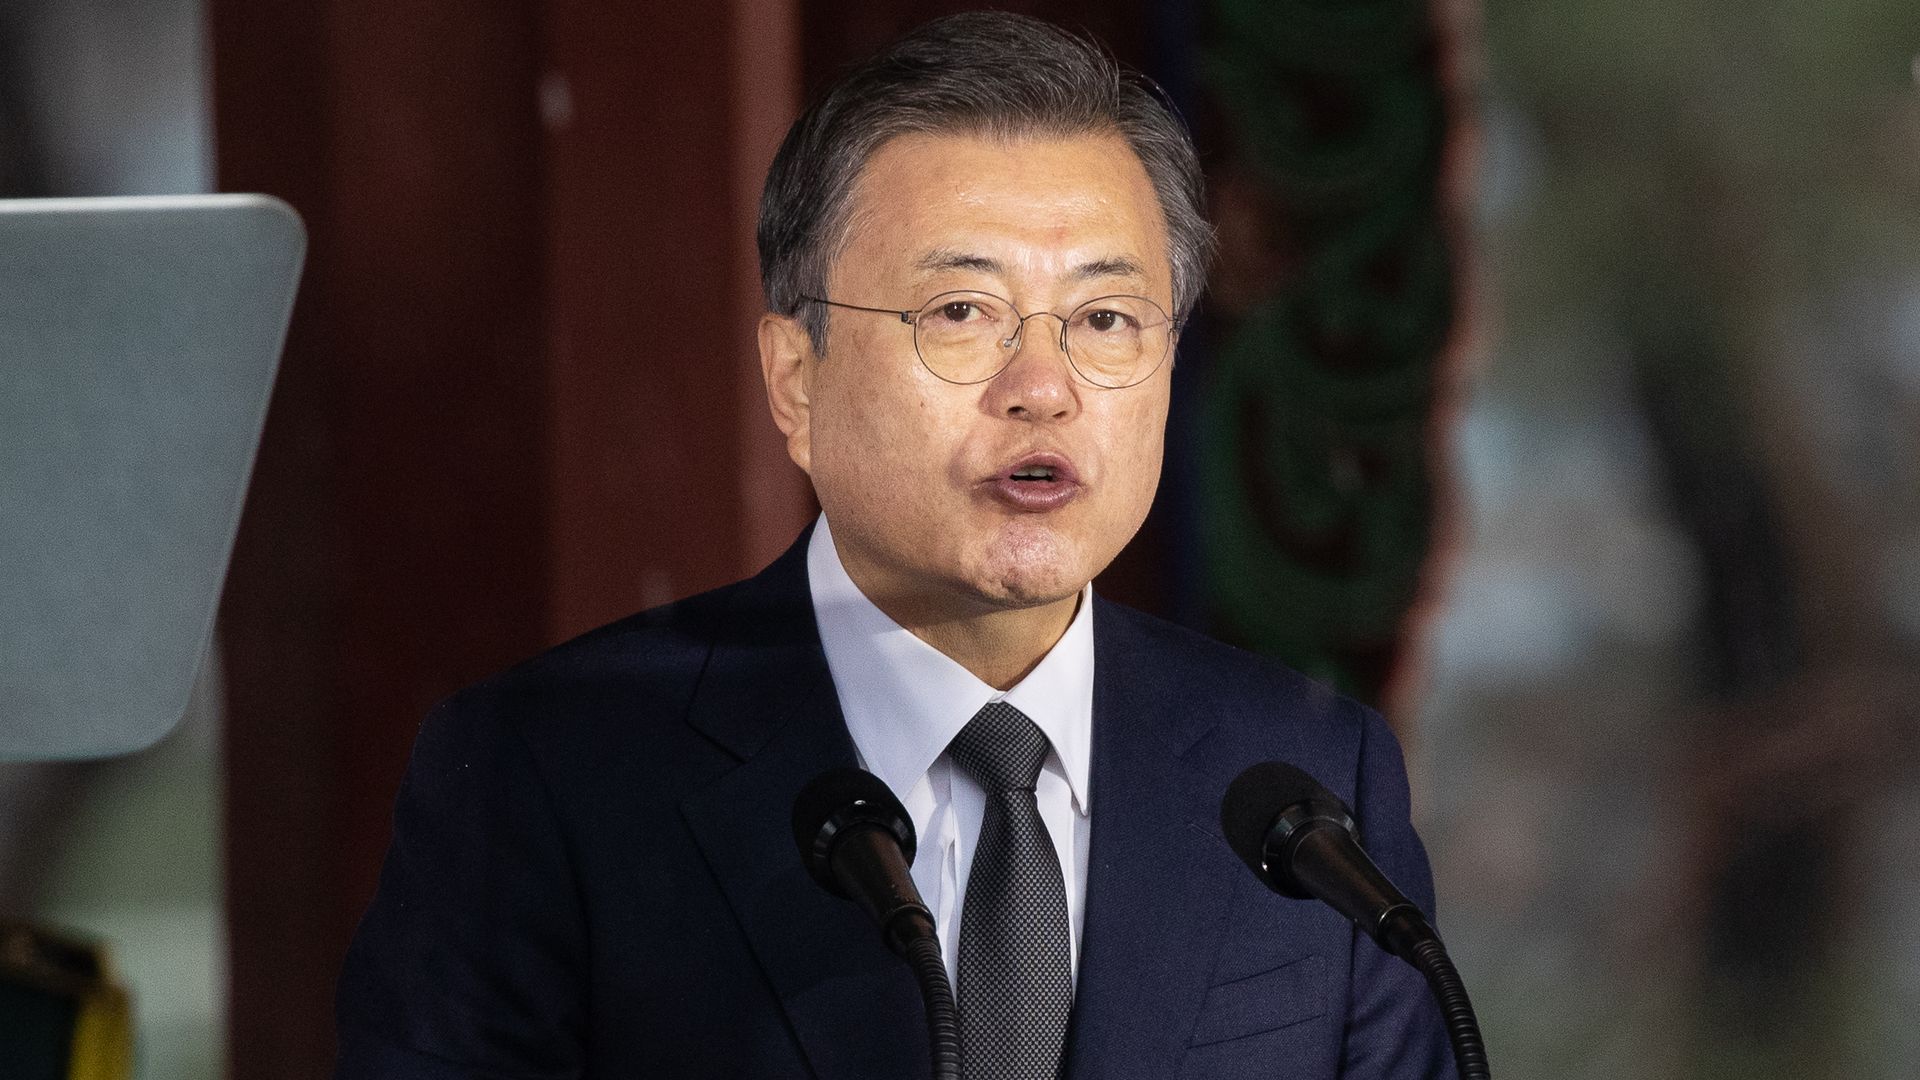 South Korean President Moon Jae-in speaking in Seoul in March 2021.